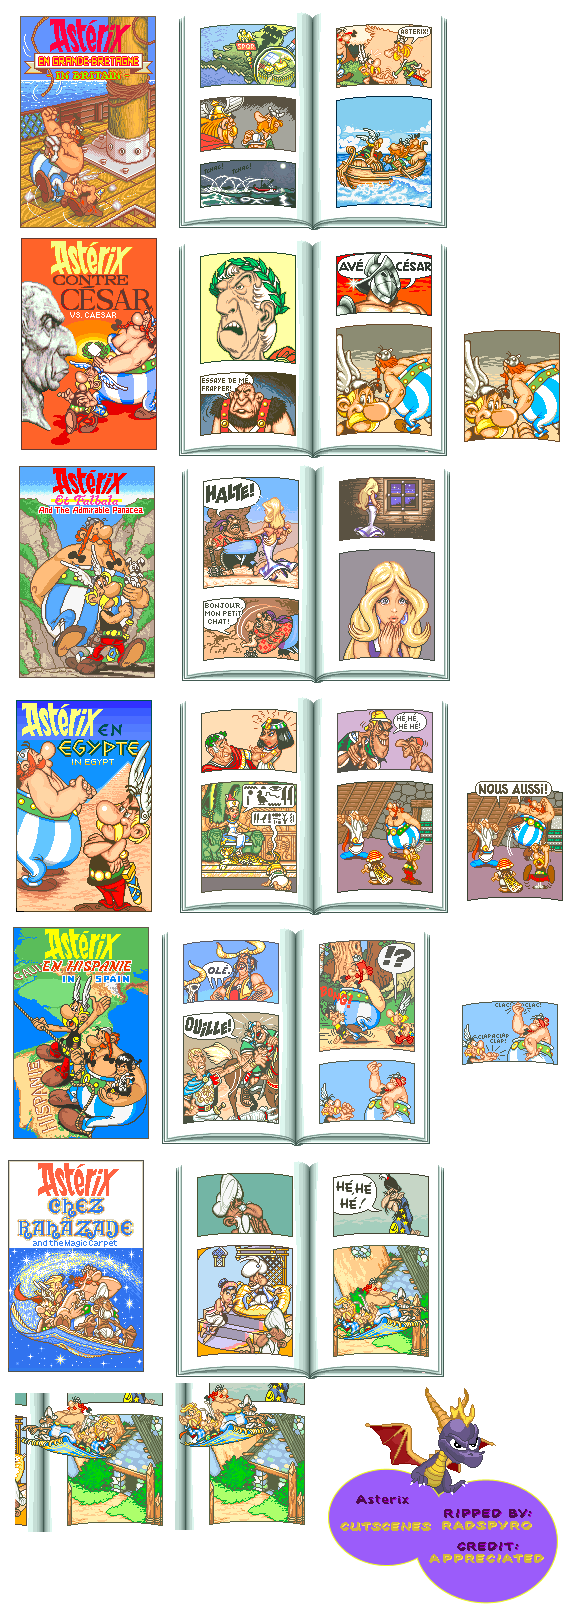 Asterix - Cutscenes